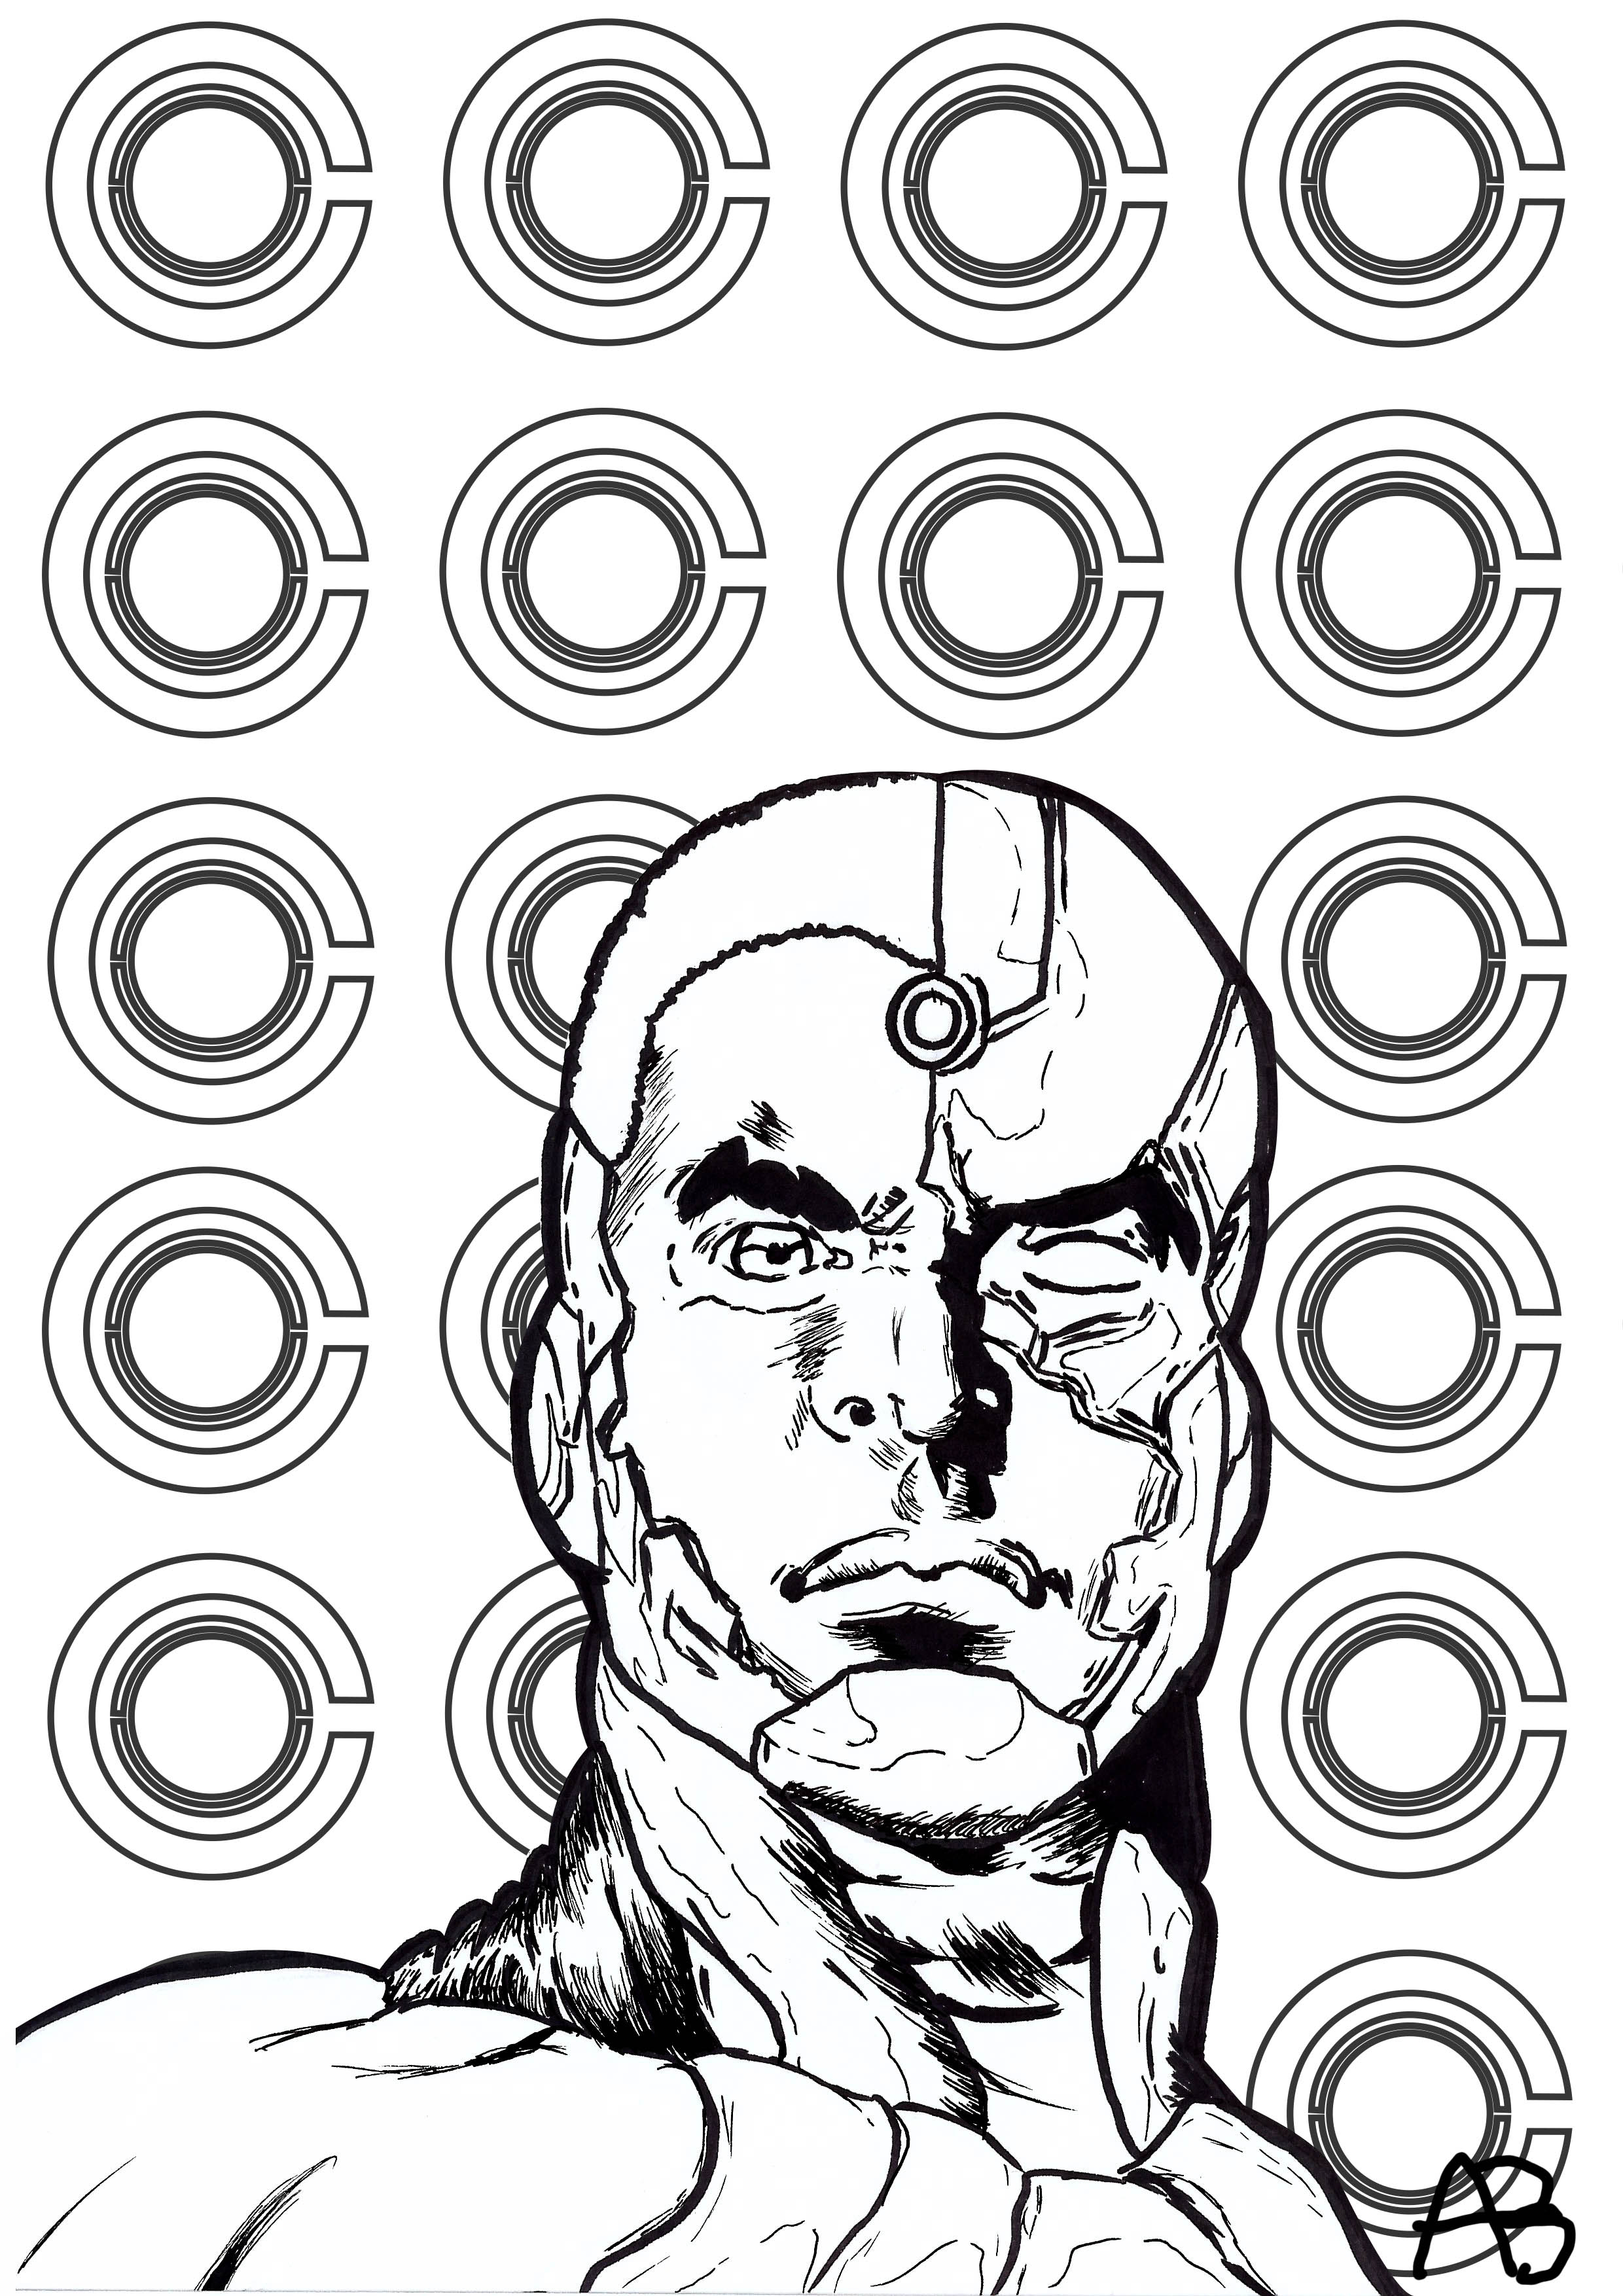 Pagina da colorare ispirata a Cyborg (personaggio dei fumetti DC), Artista : Allan